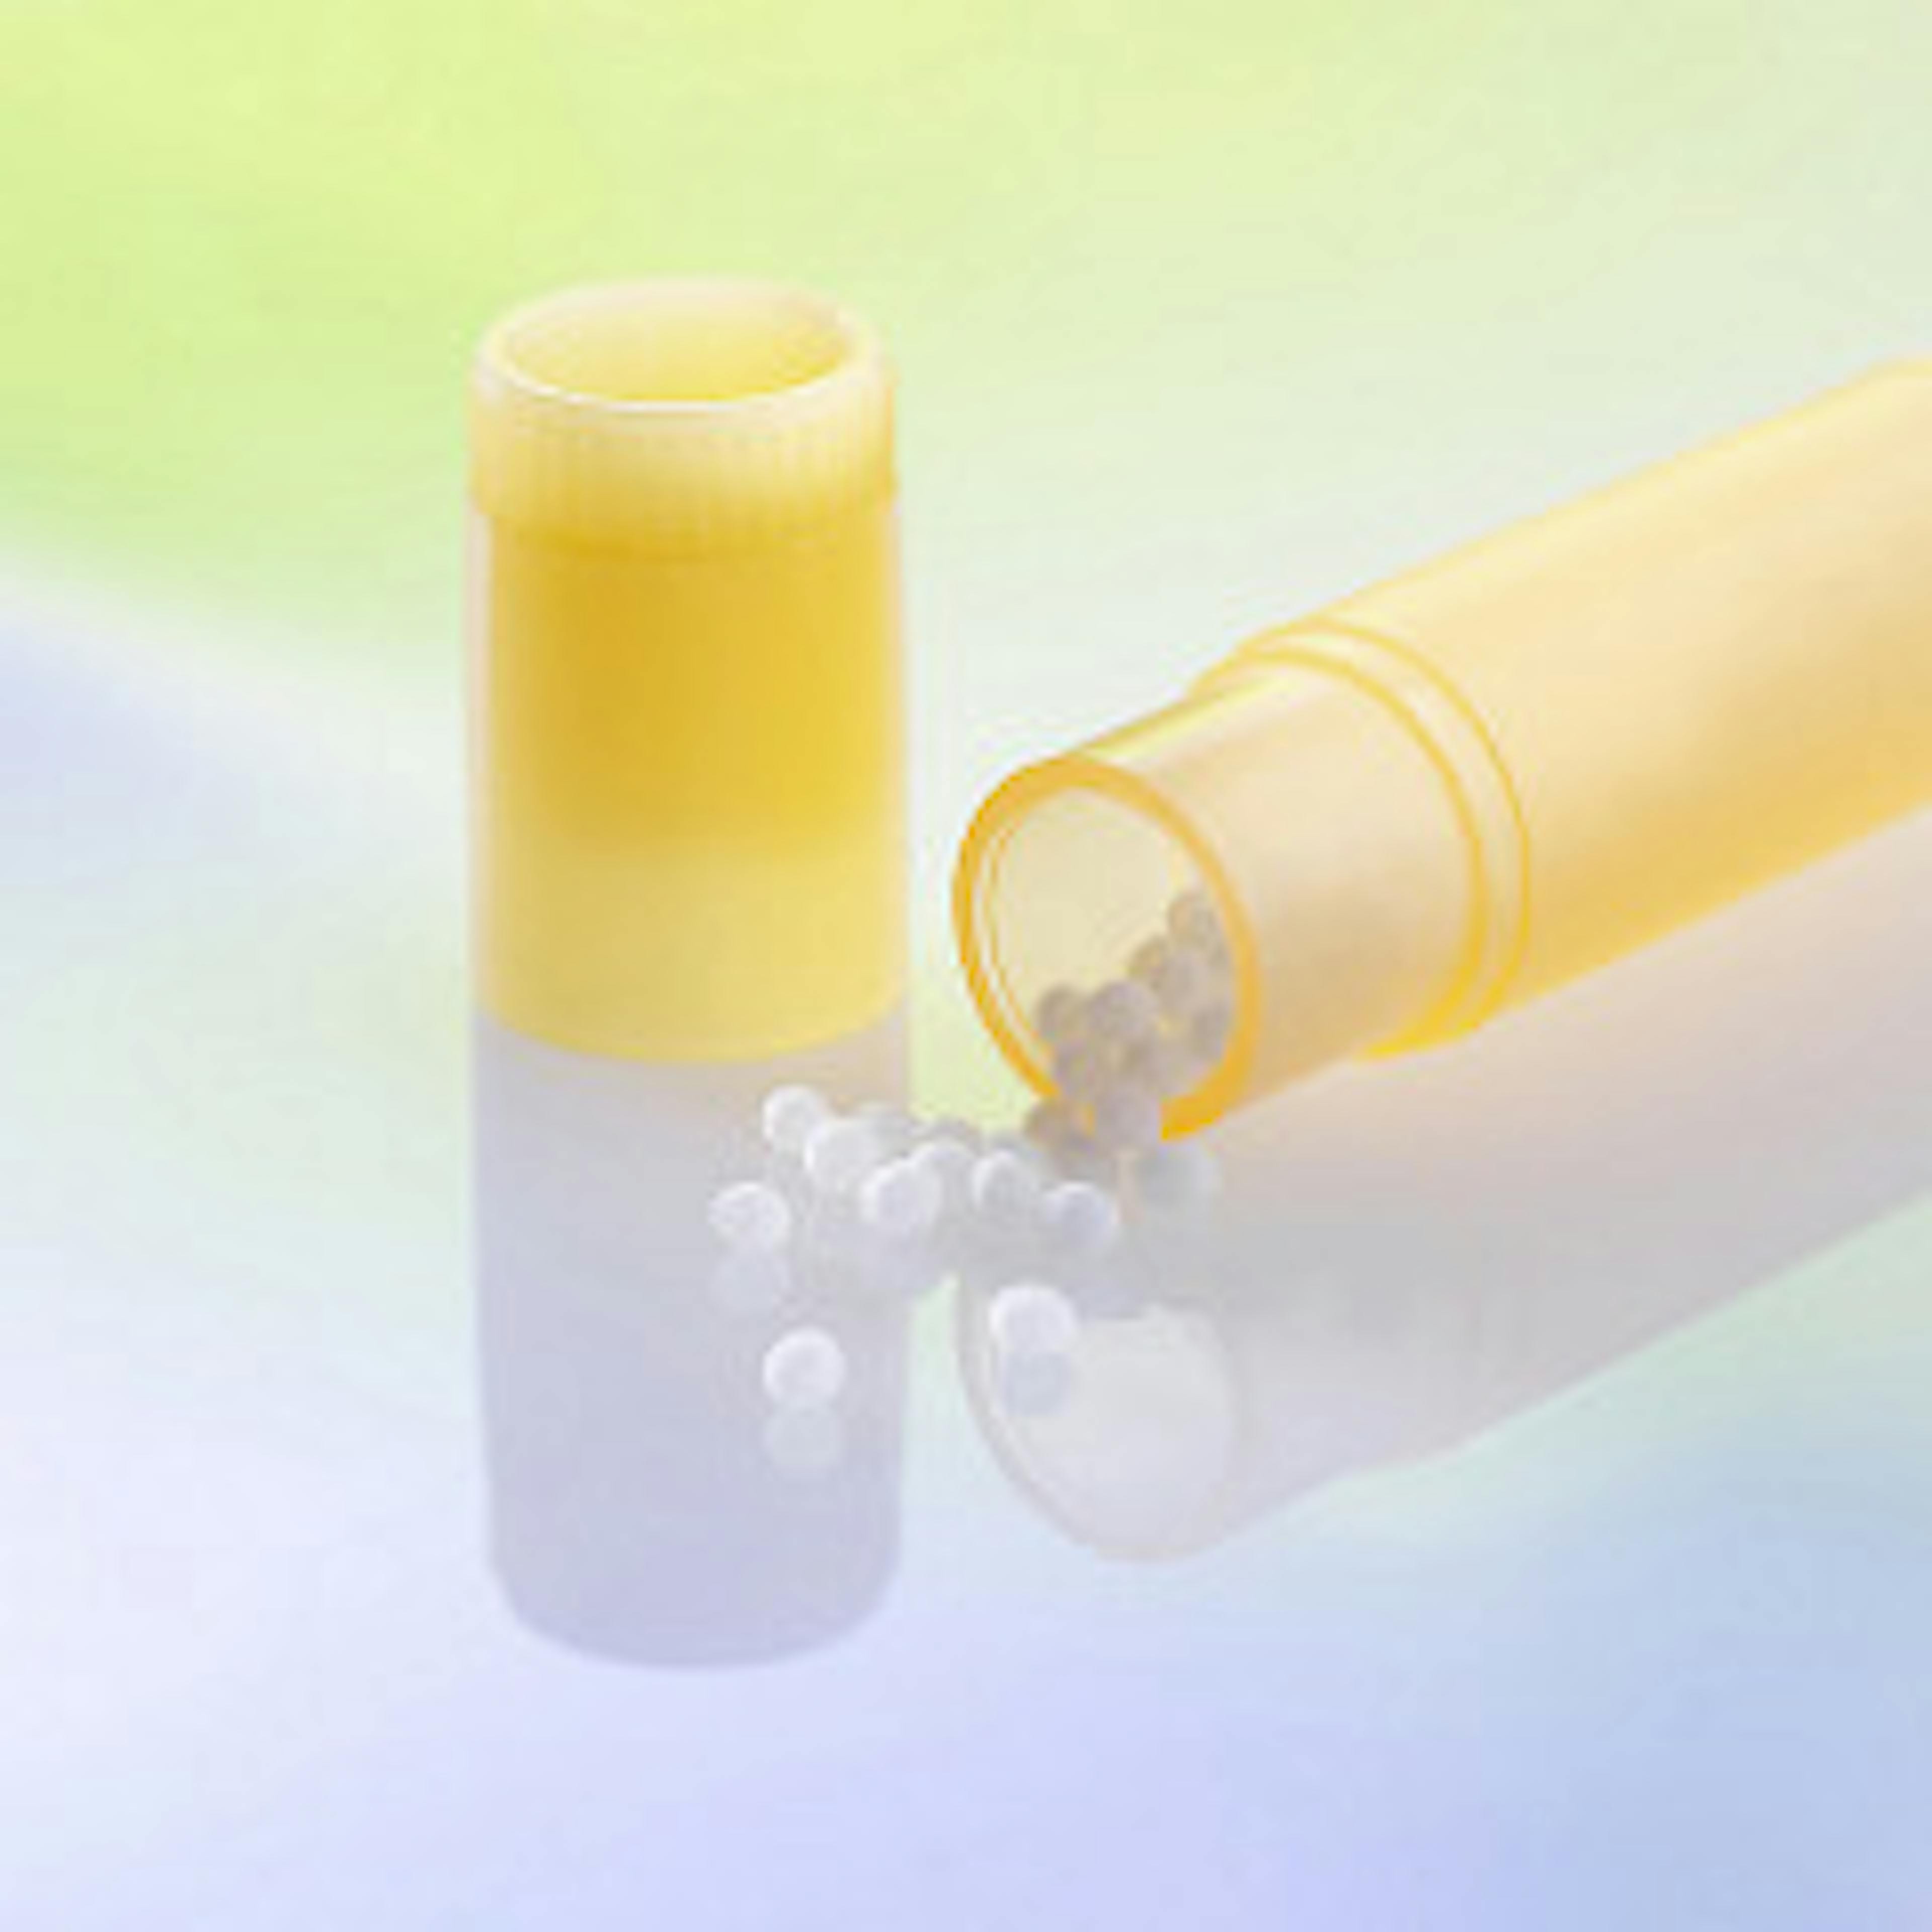 Imagen de un tubo de homeopatía